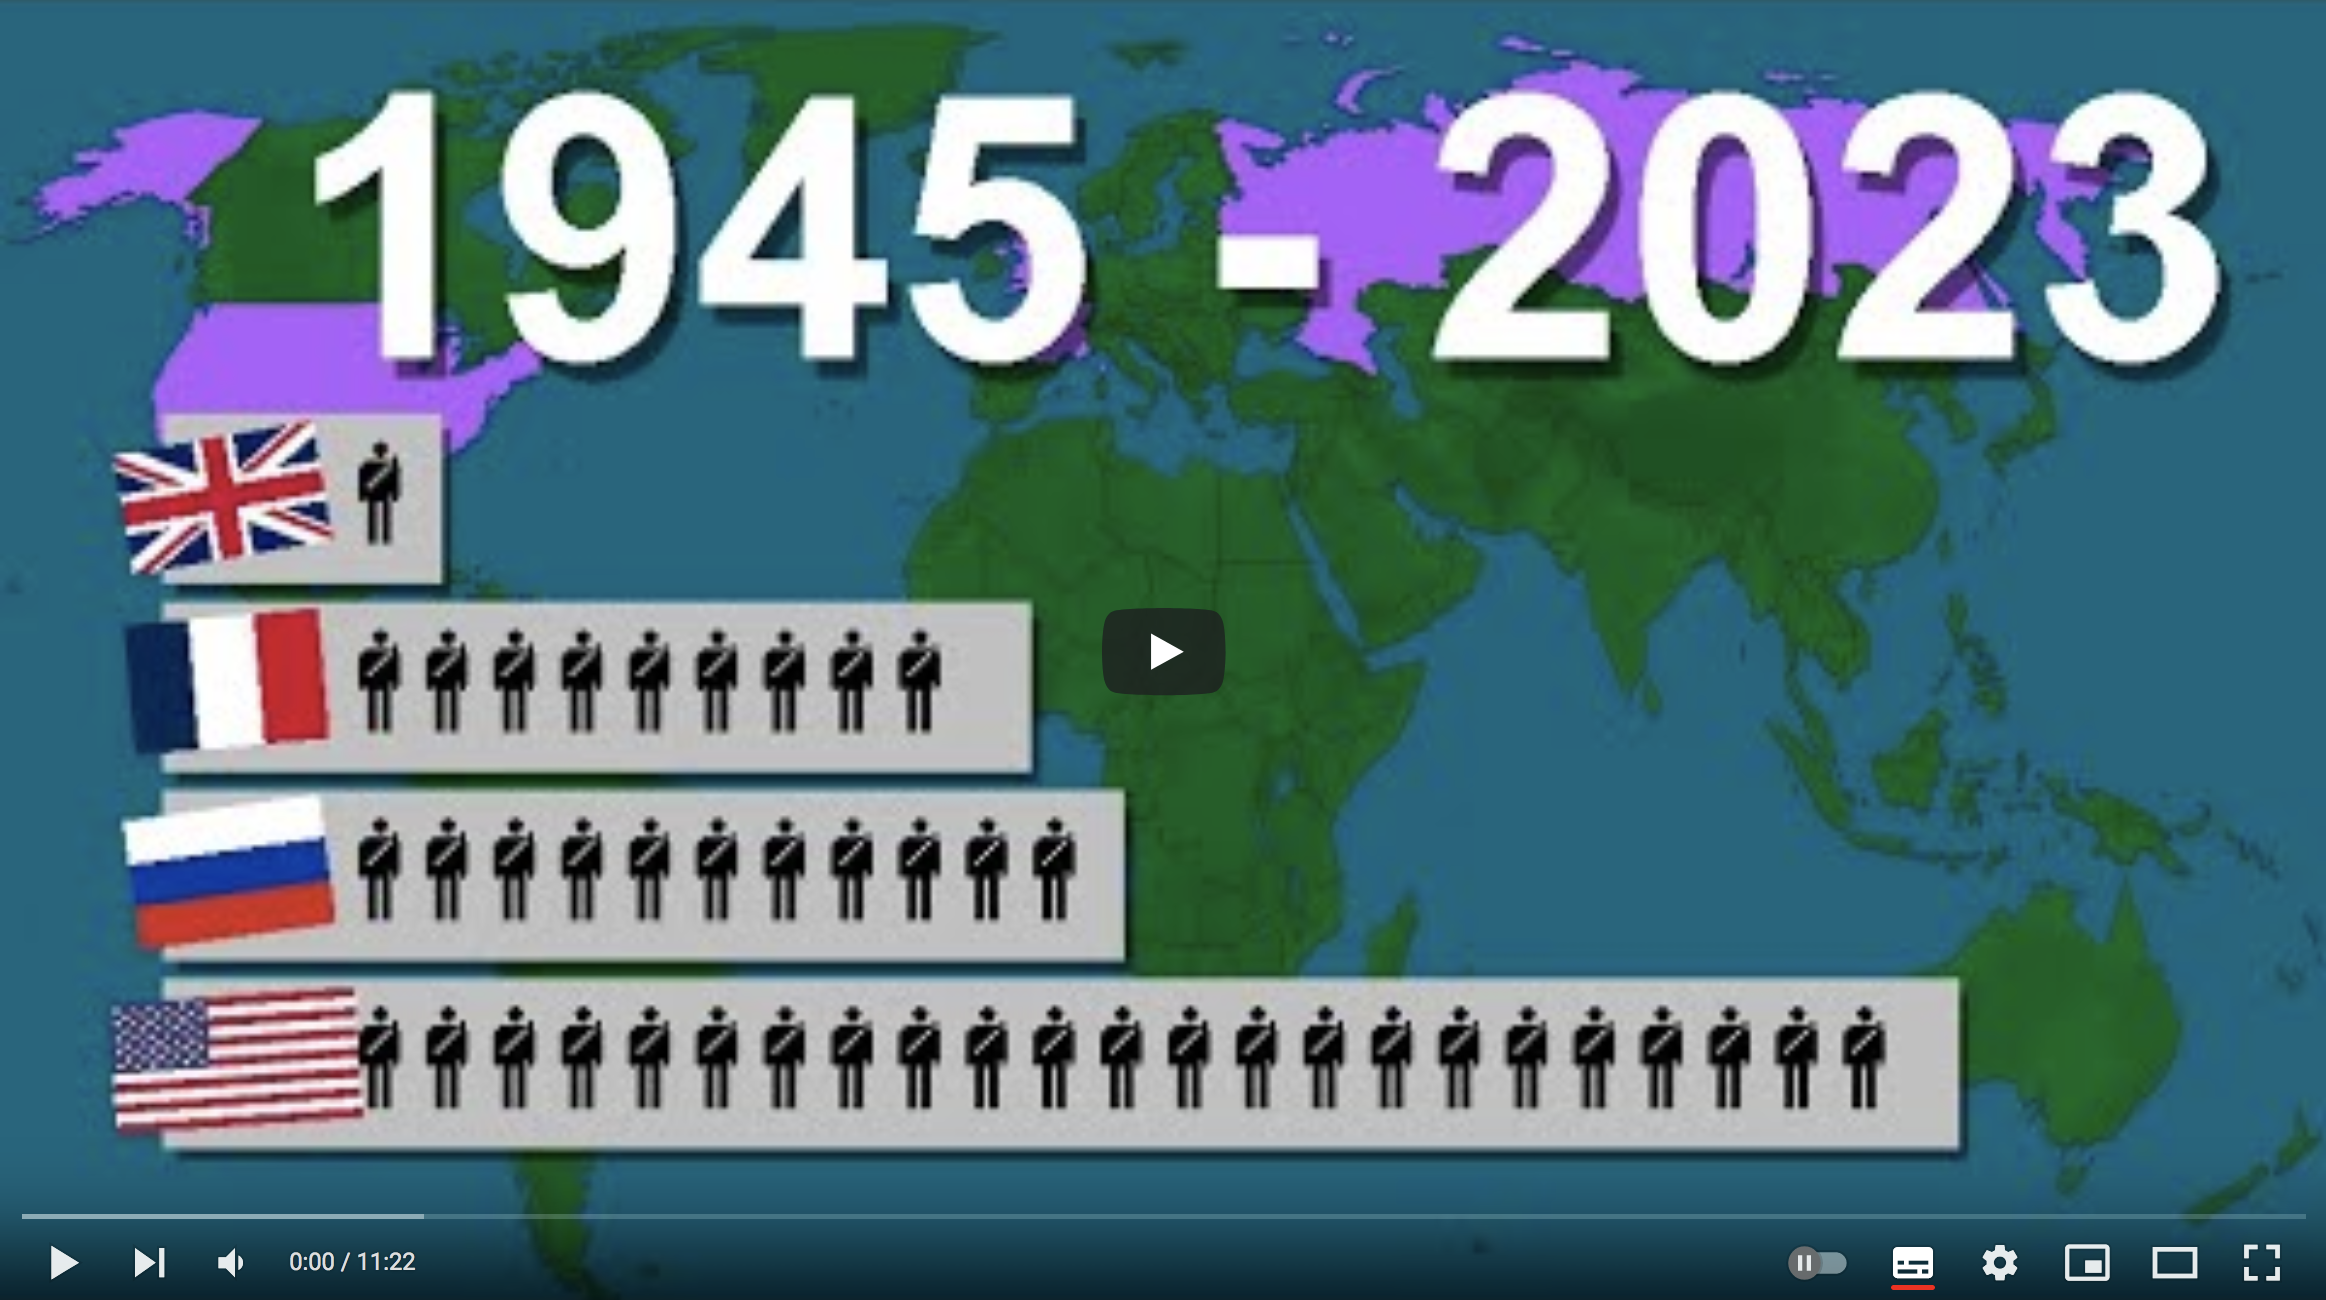 Total des pertes de soldats depuis 1945 par pays (VIDÉO)